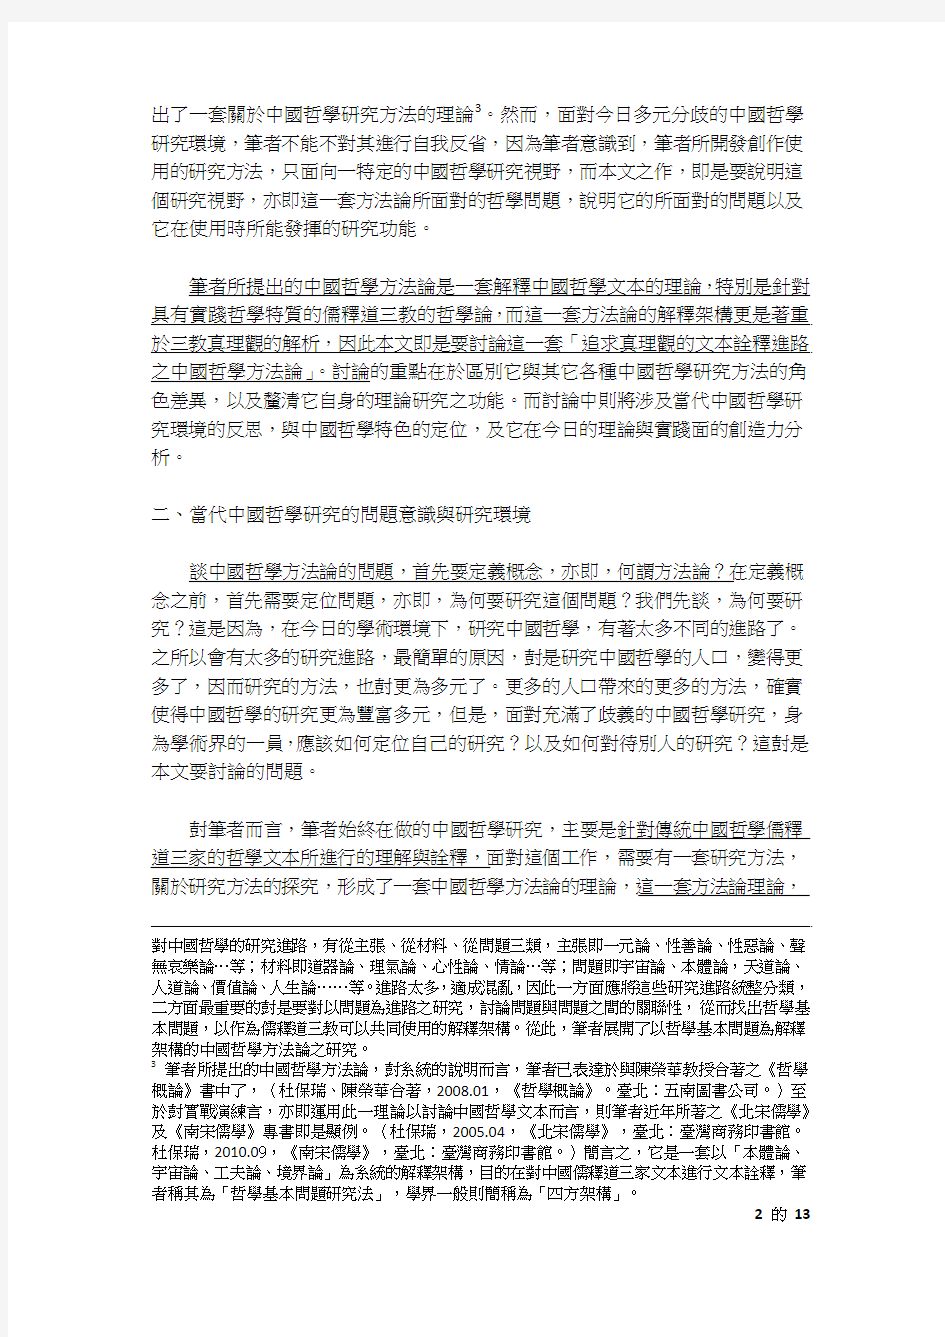 追求真理观的文本诠释进路之中国哲学方法论[1 本文已投稿台湾鹅湖月刊,近期刊出。]